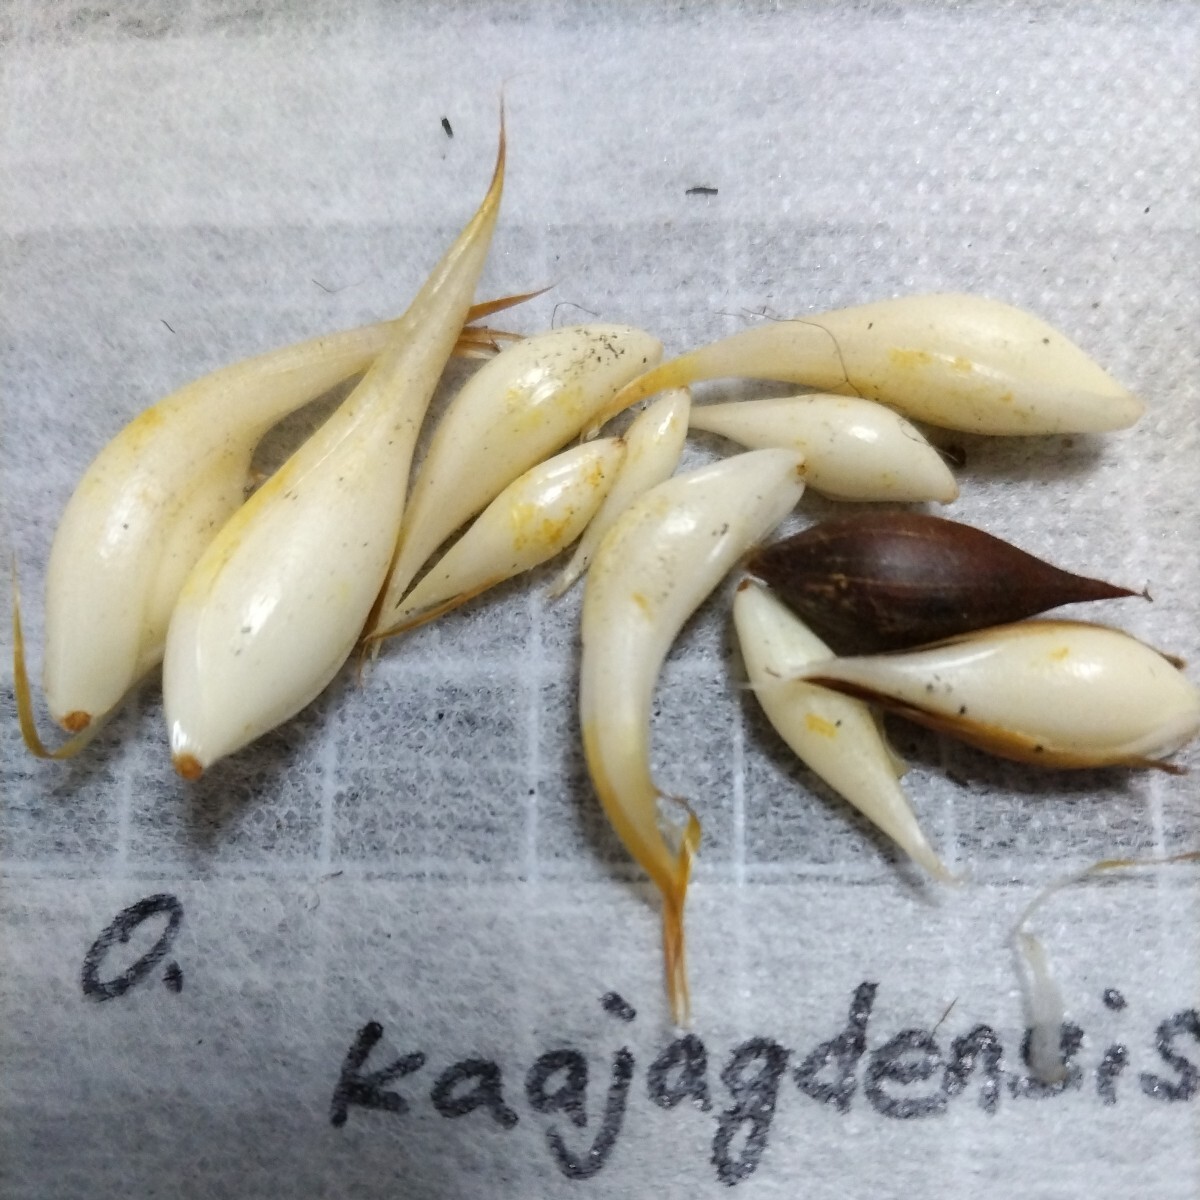 Oxalis kaajagdensis. луковица 